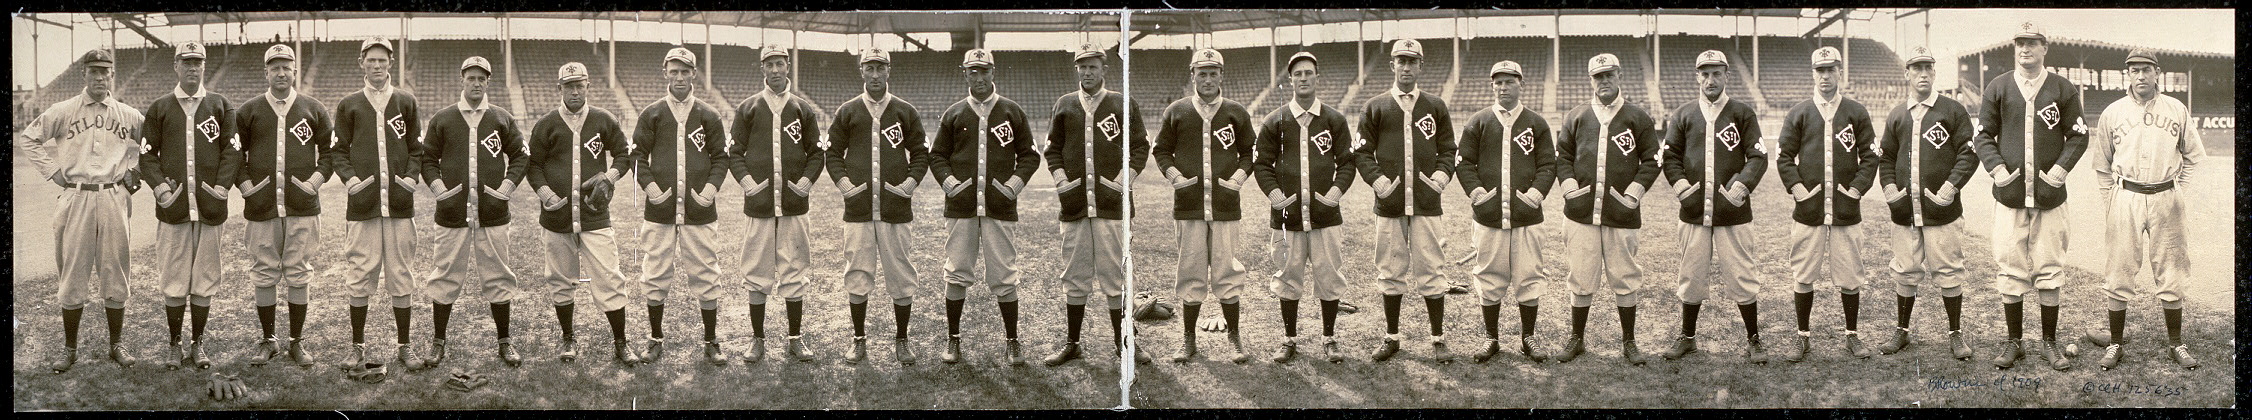 Browns of 1909.jpg